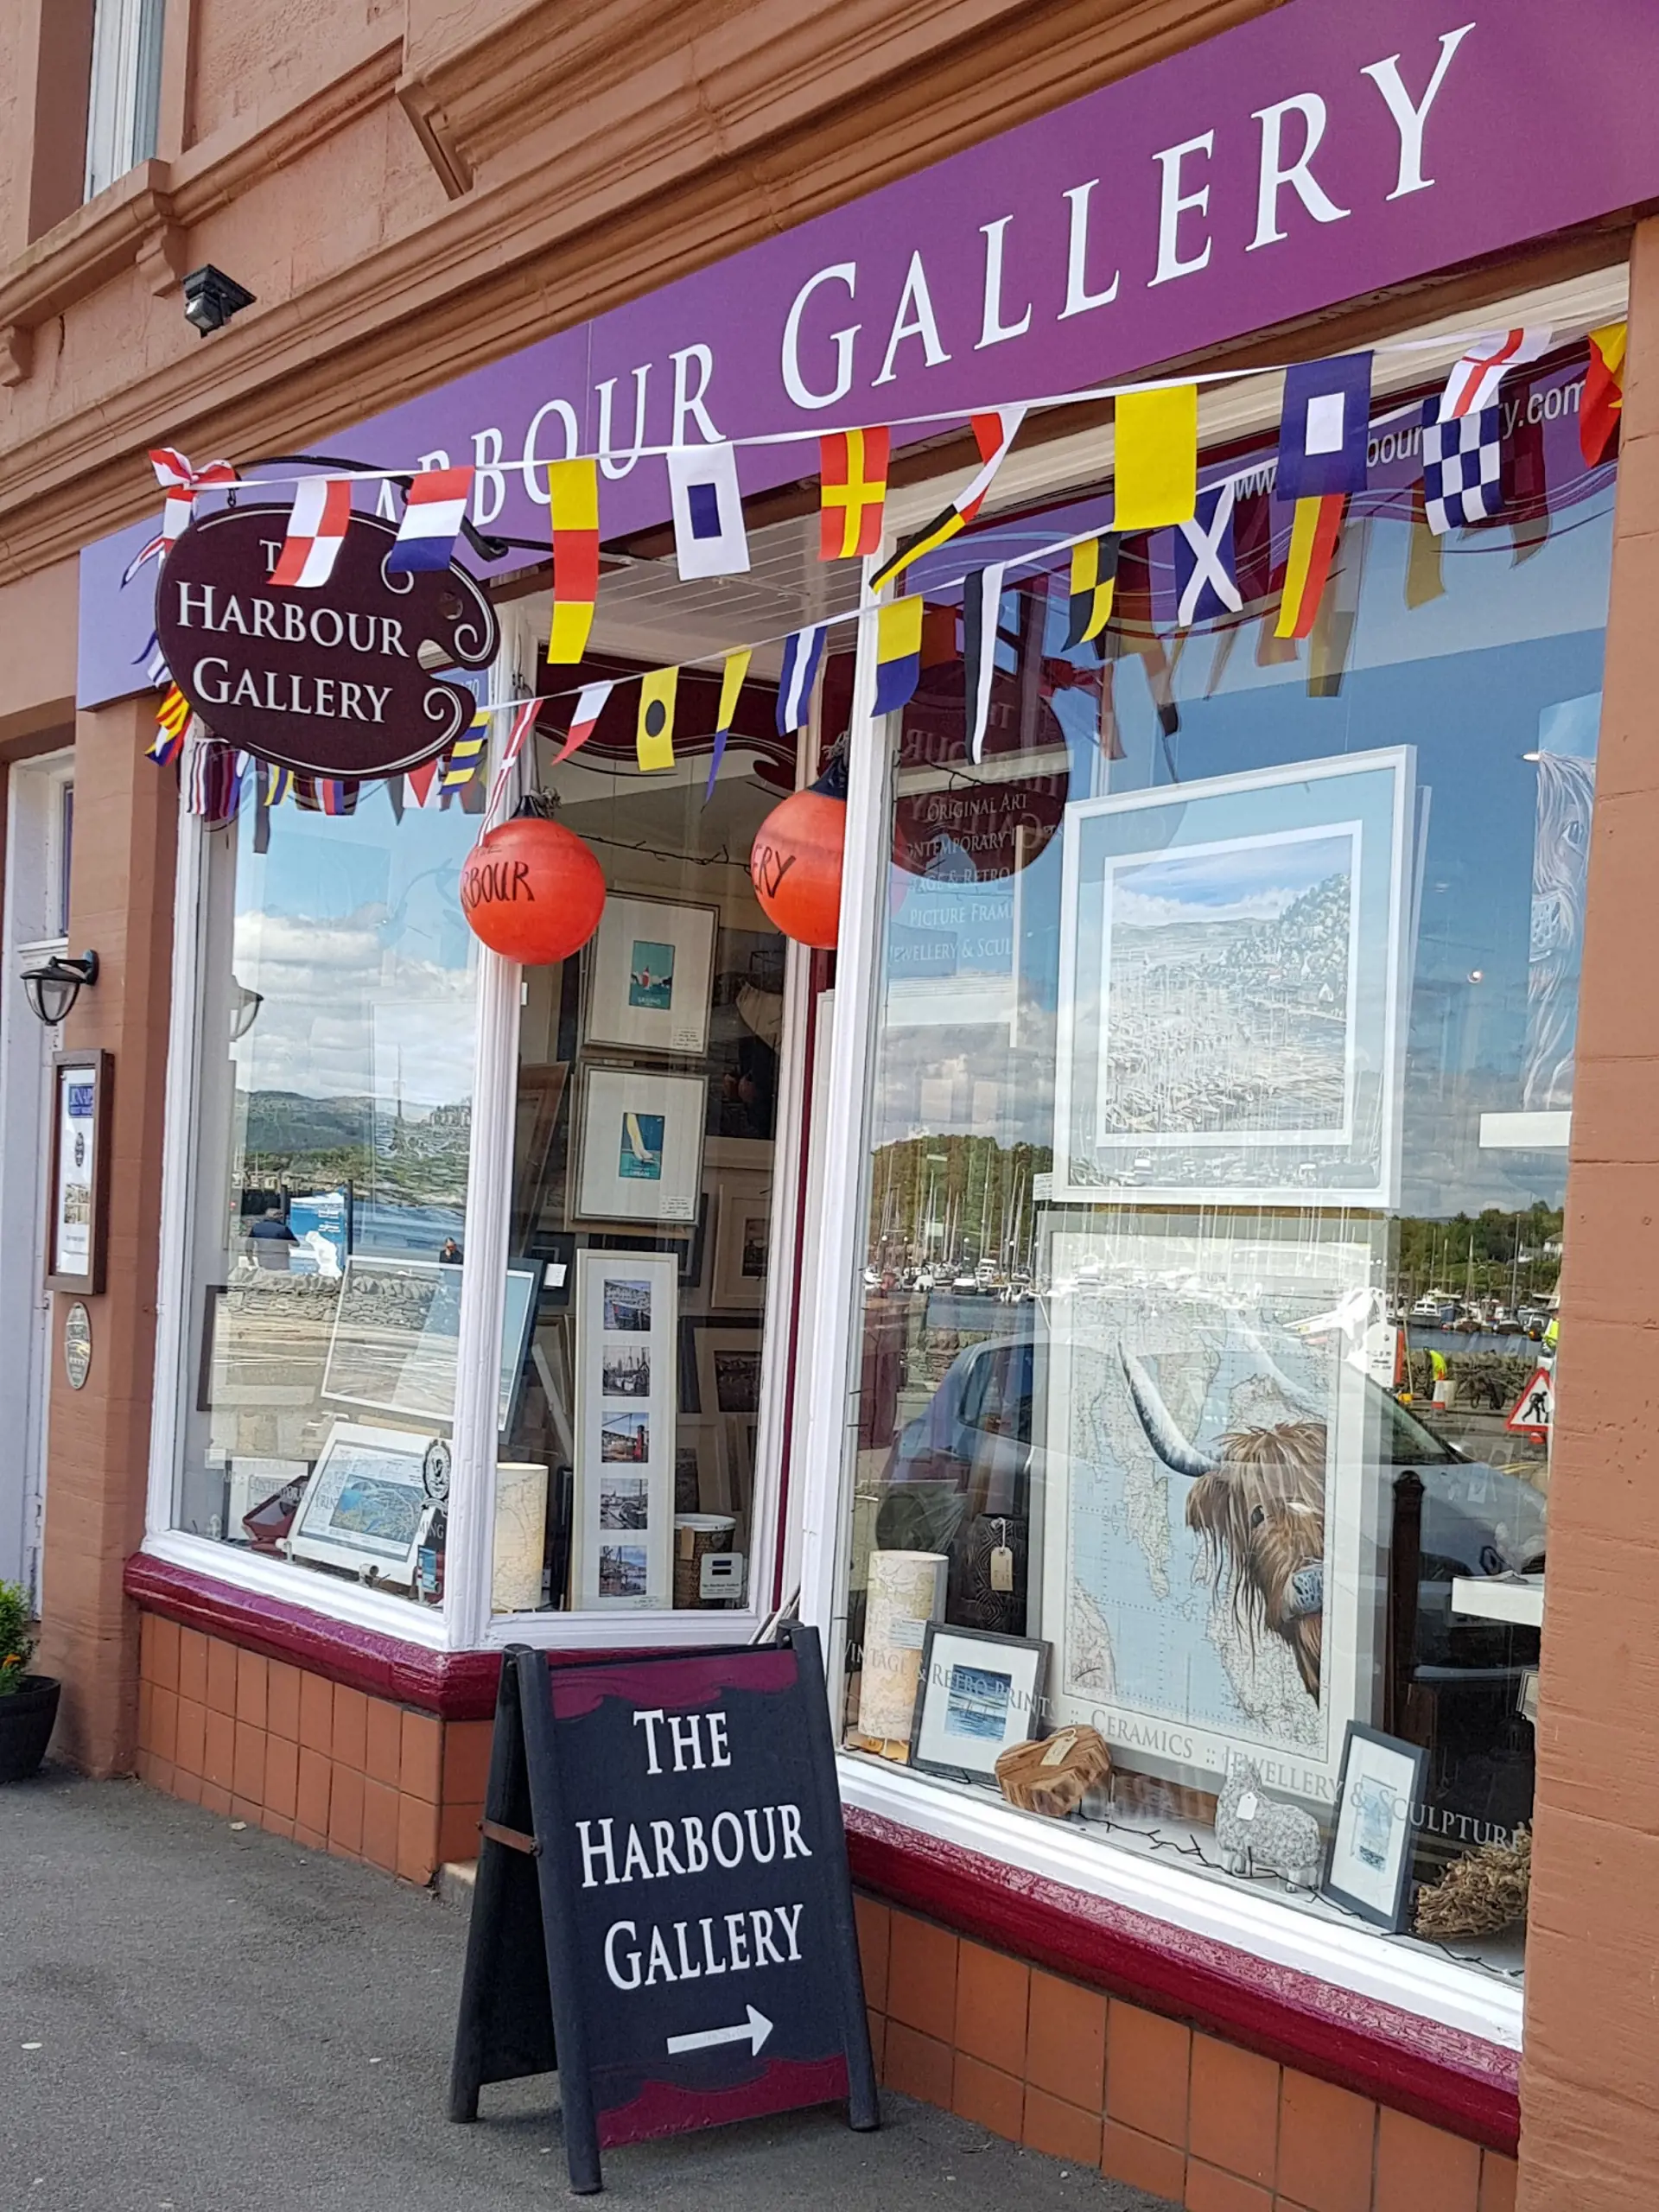 The Harbour Gallery Tarbert